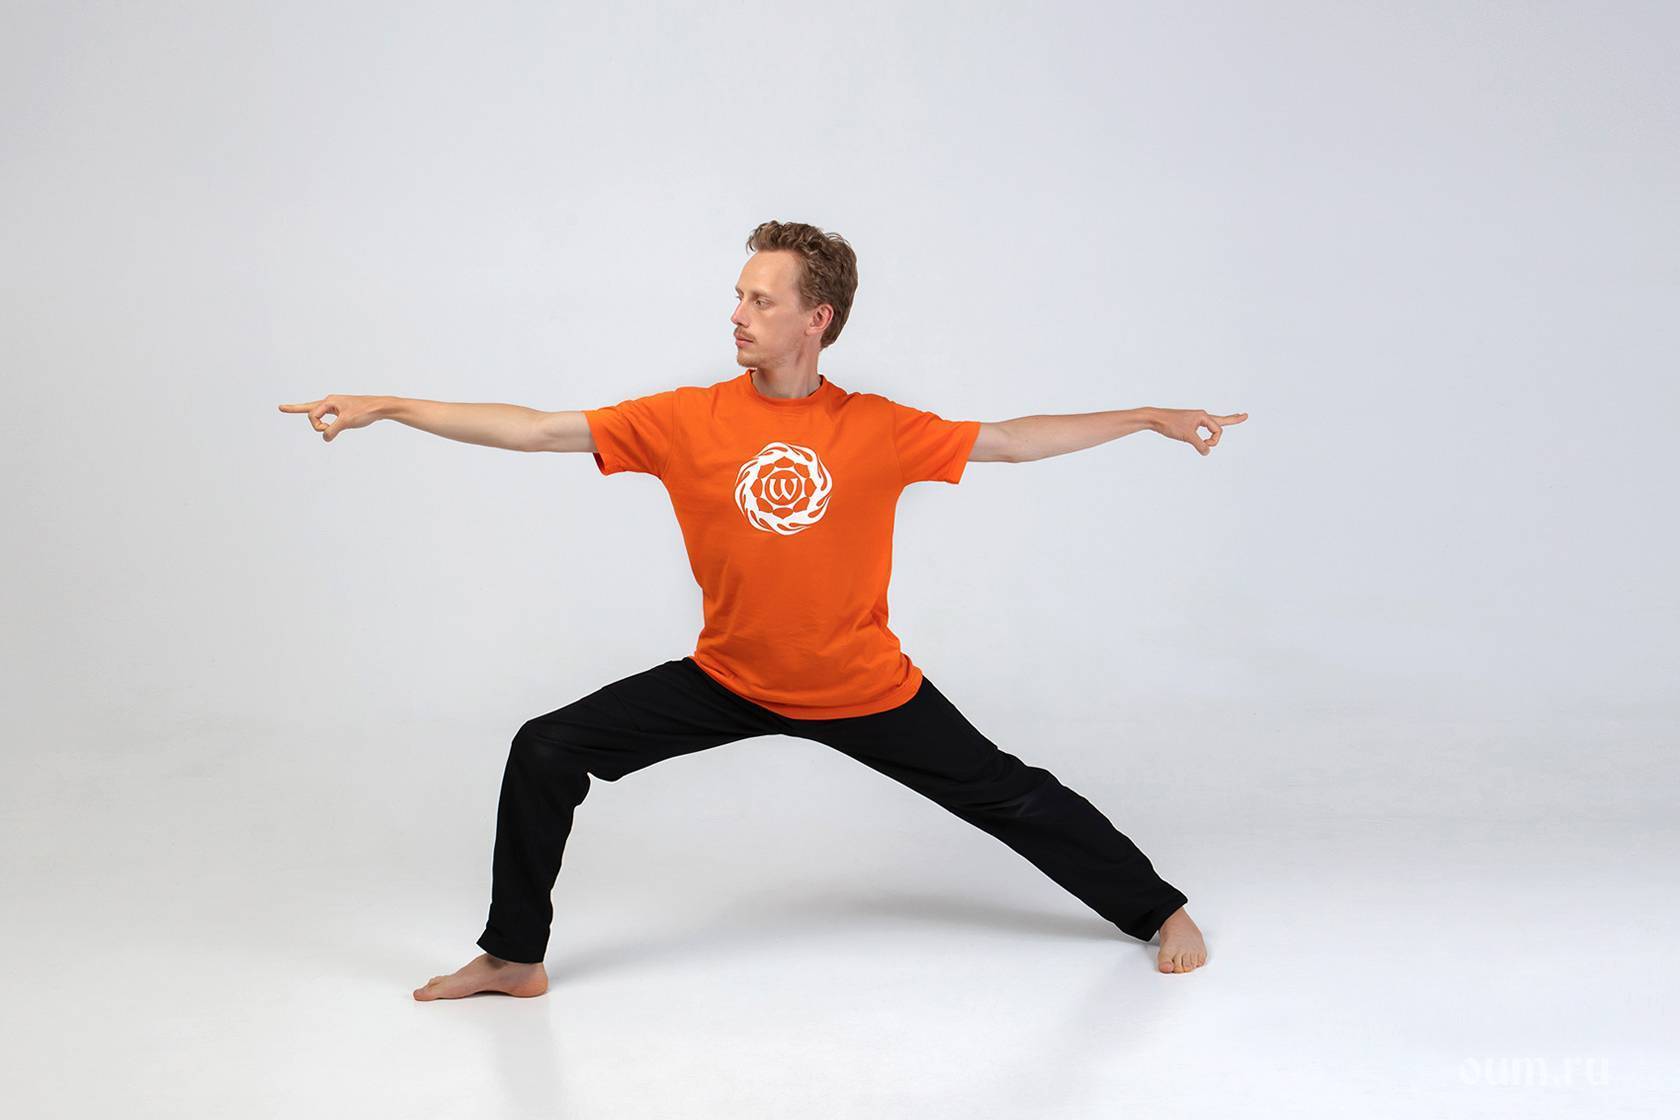 Чатуранга дандасана или поза посоха на четырех опорах в йоге: техника выполнения, польза, противопоказания